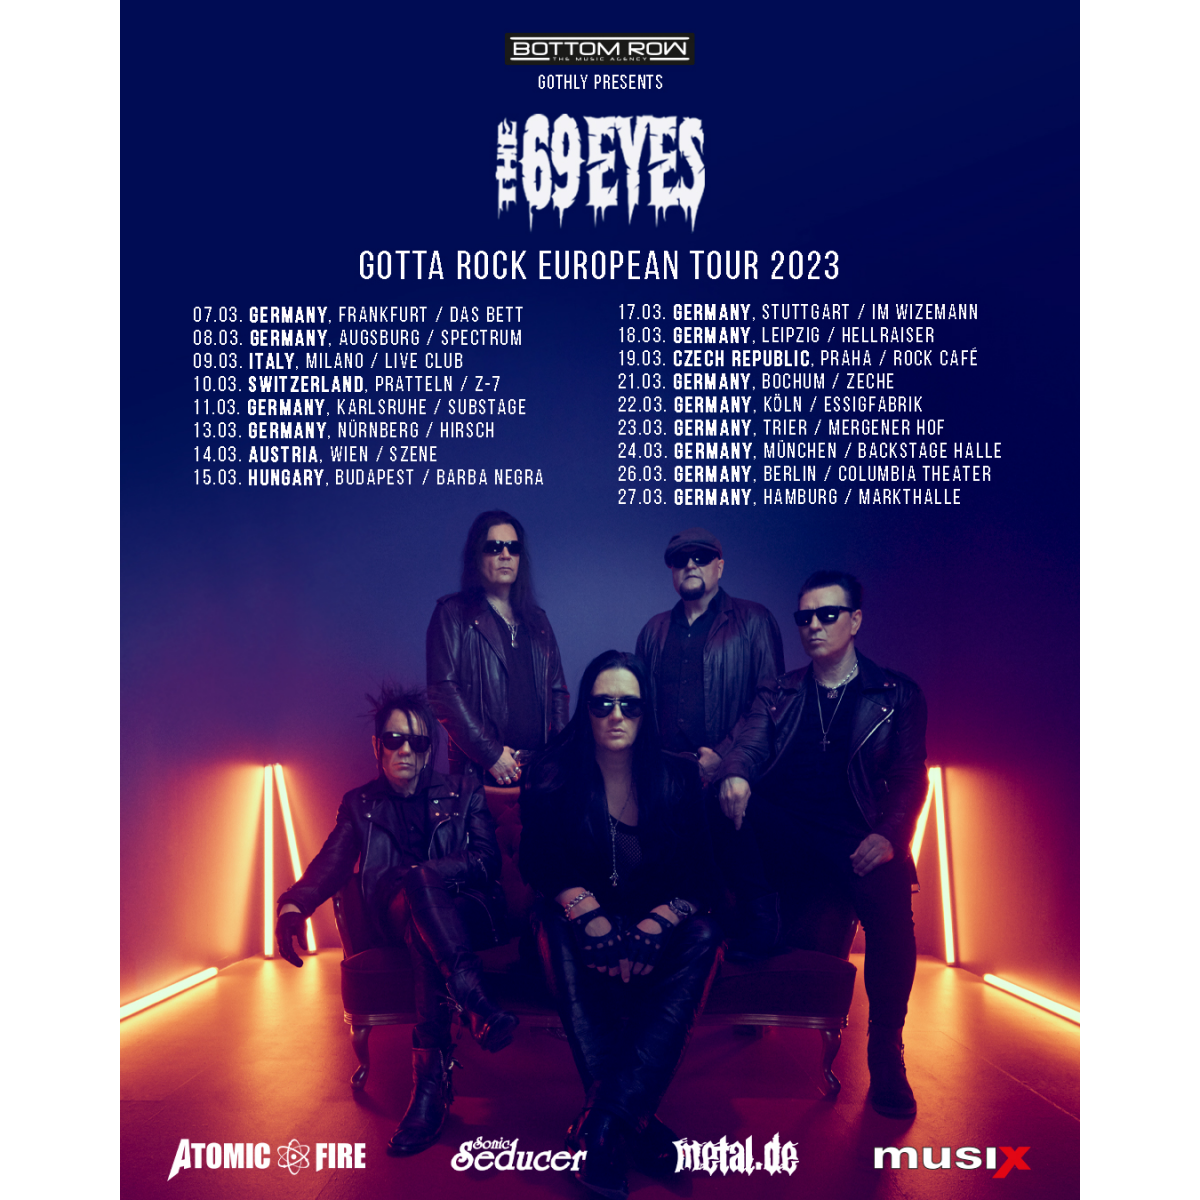 THE 69 EYES "Gotta Rock"Tour 2023 mit 10 Konzerten in Deutschland